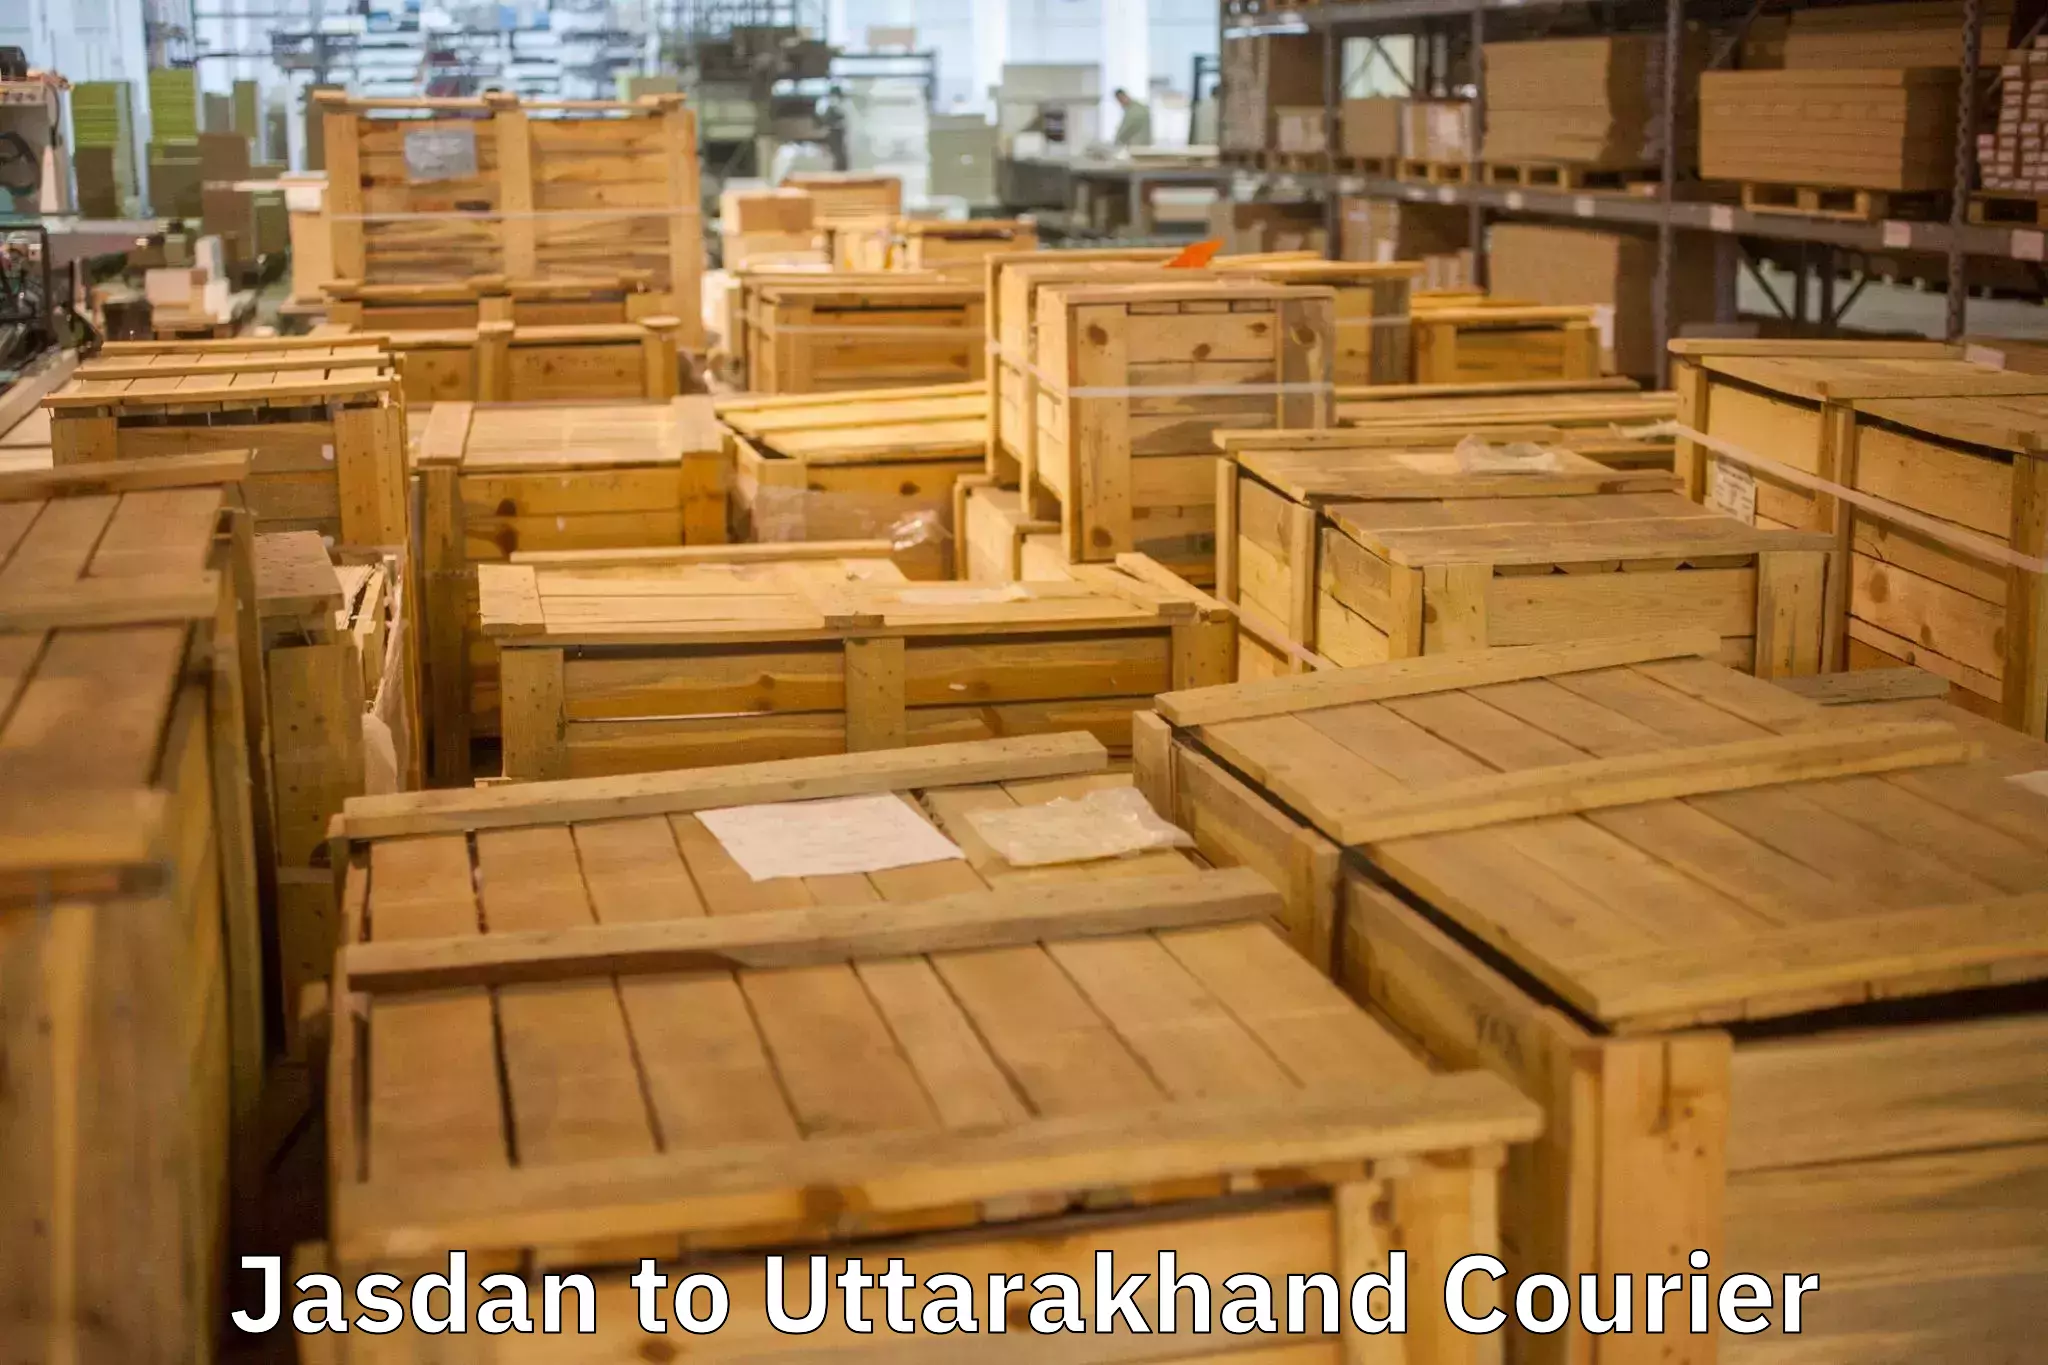 Door-to-door relocation services Jasdan to Uttarakhand